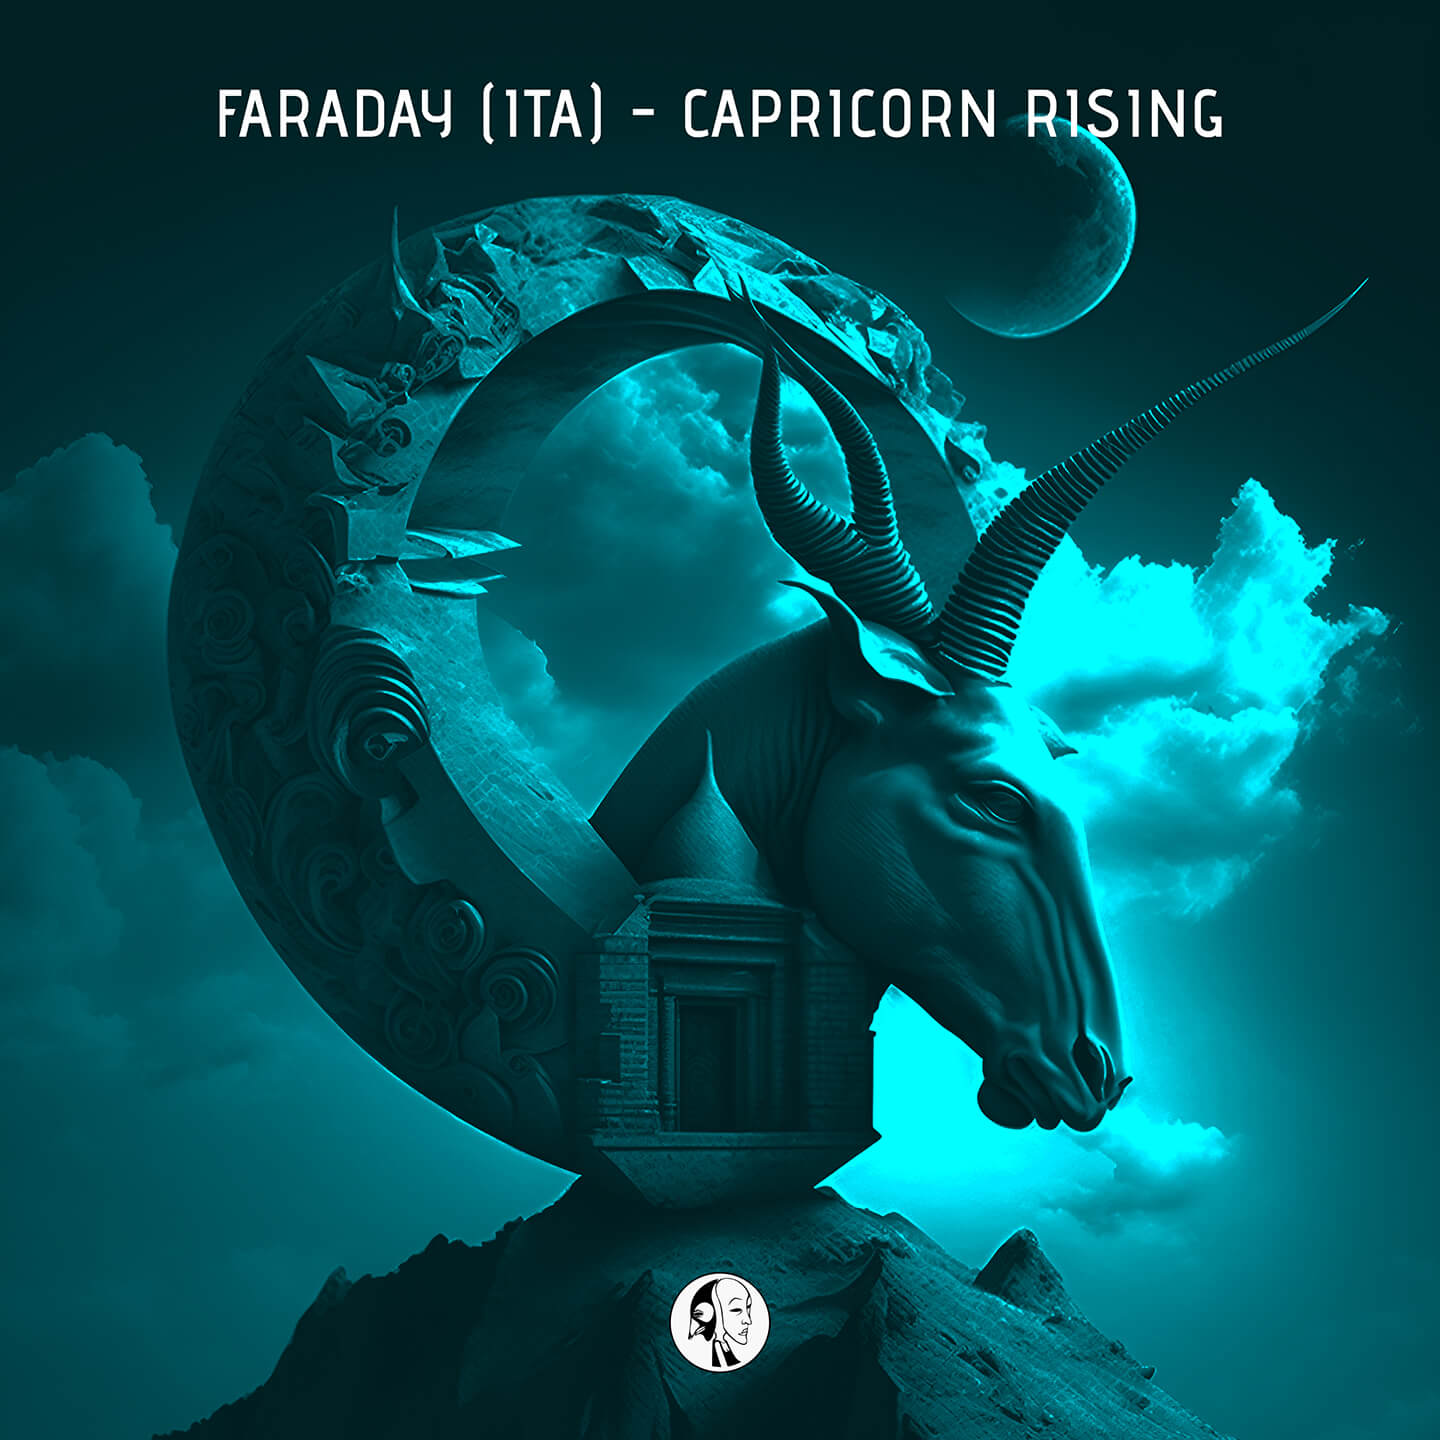 SYYKBLK083 Faraday (ITA) - Capricorn Rising